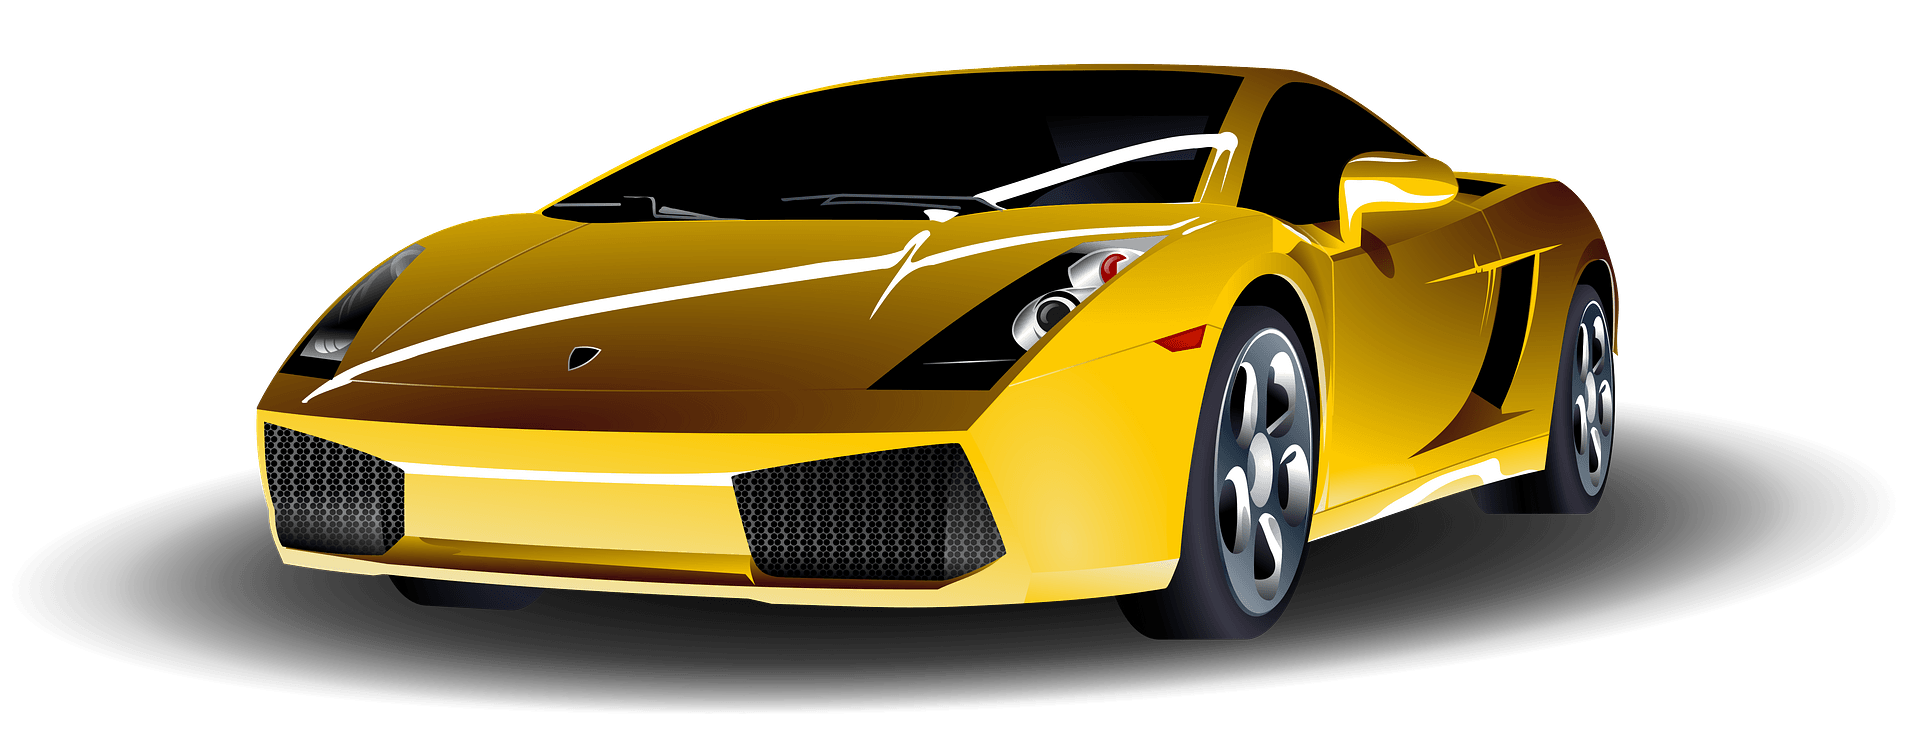 Pic PNG convertible jaune Lamborghini